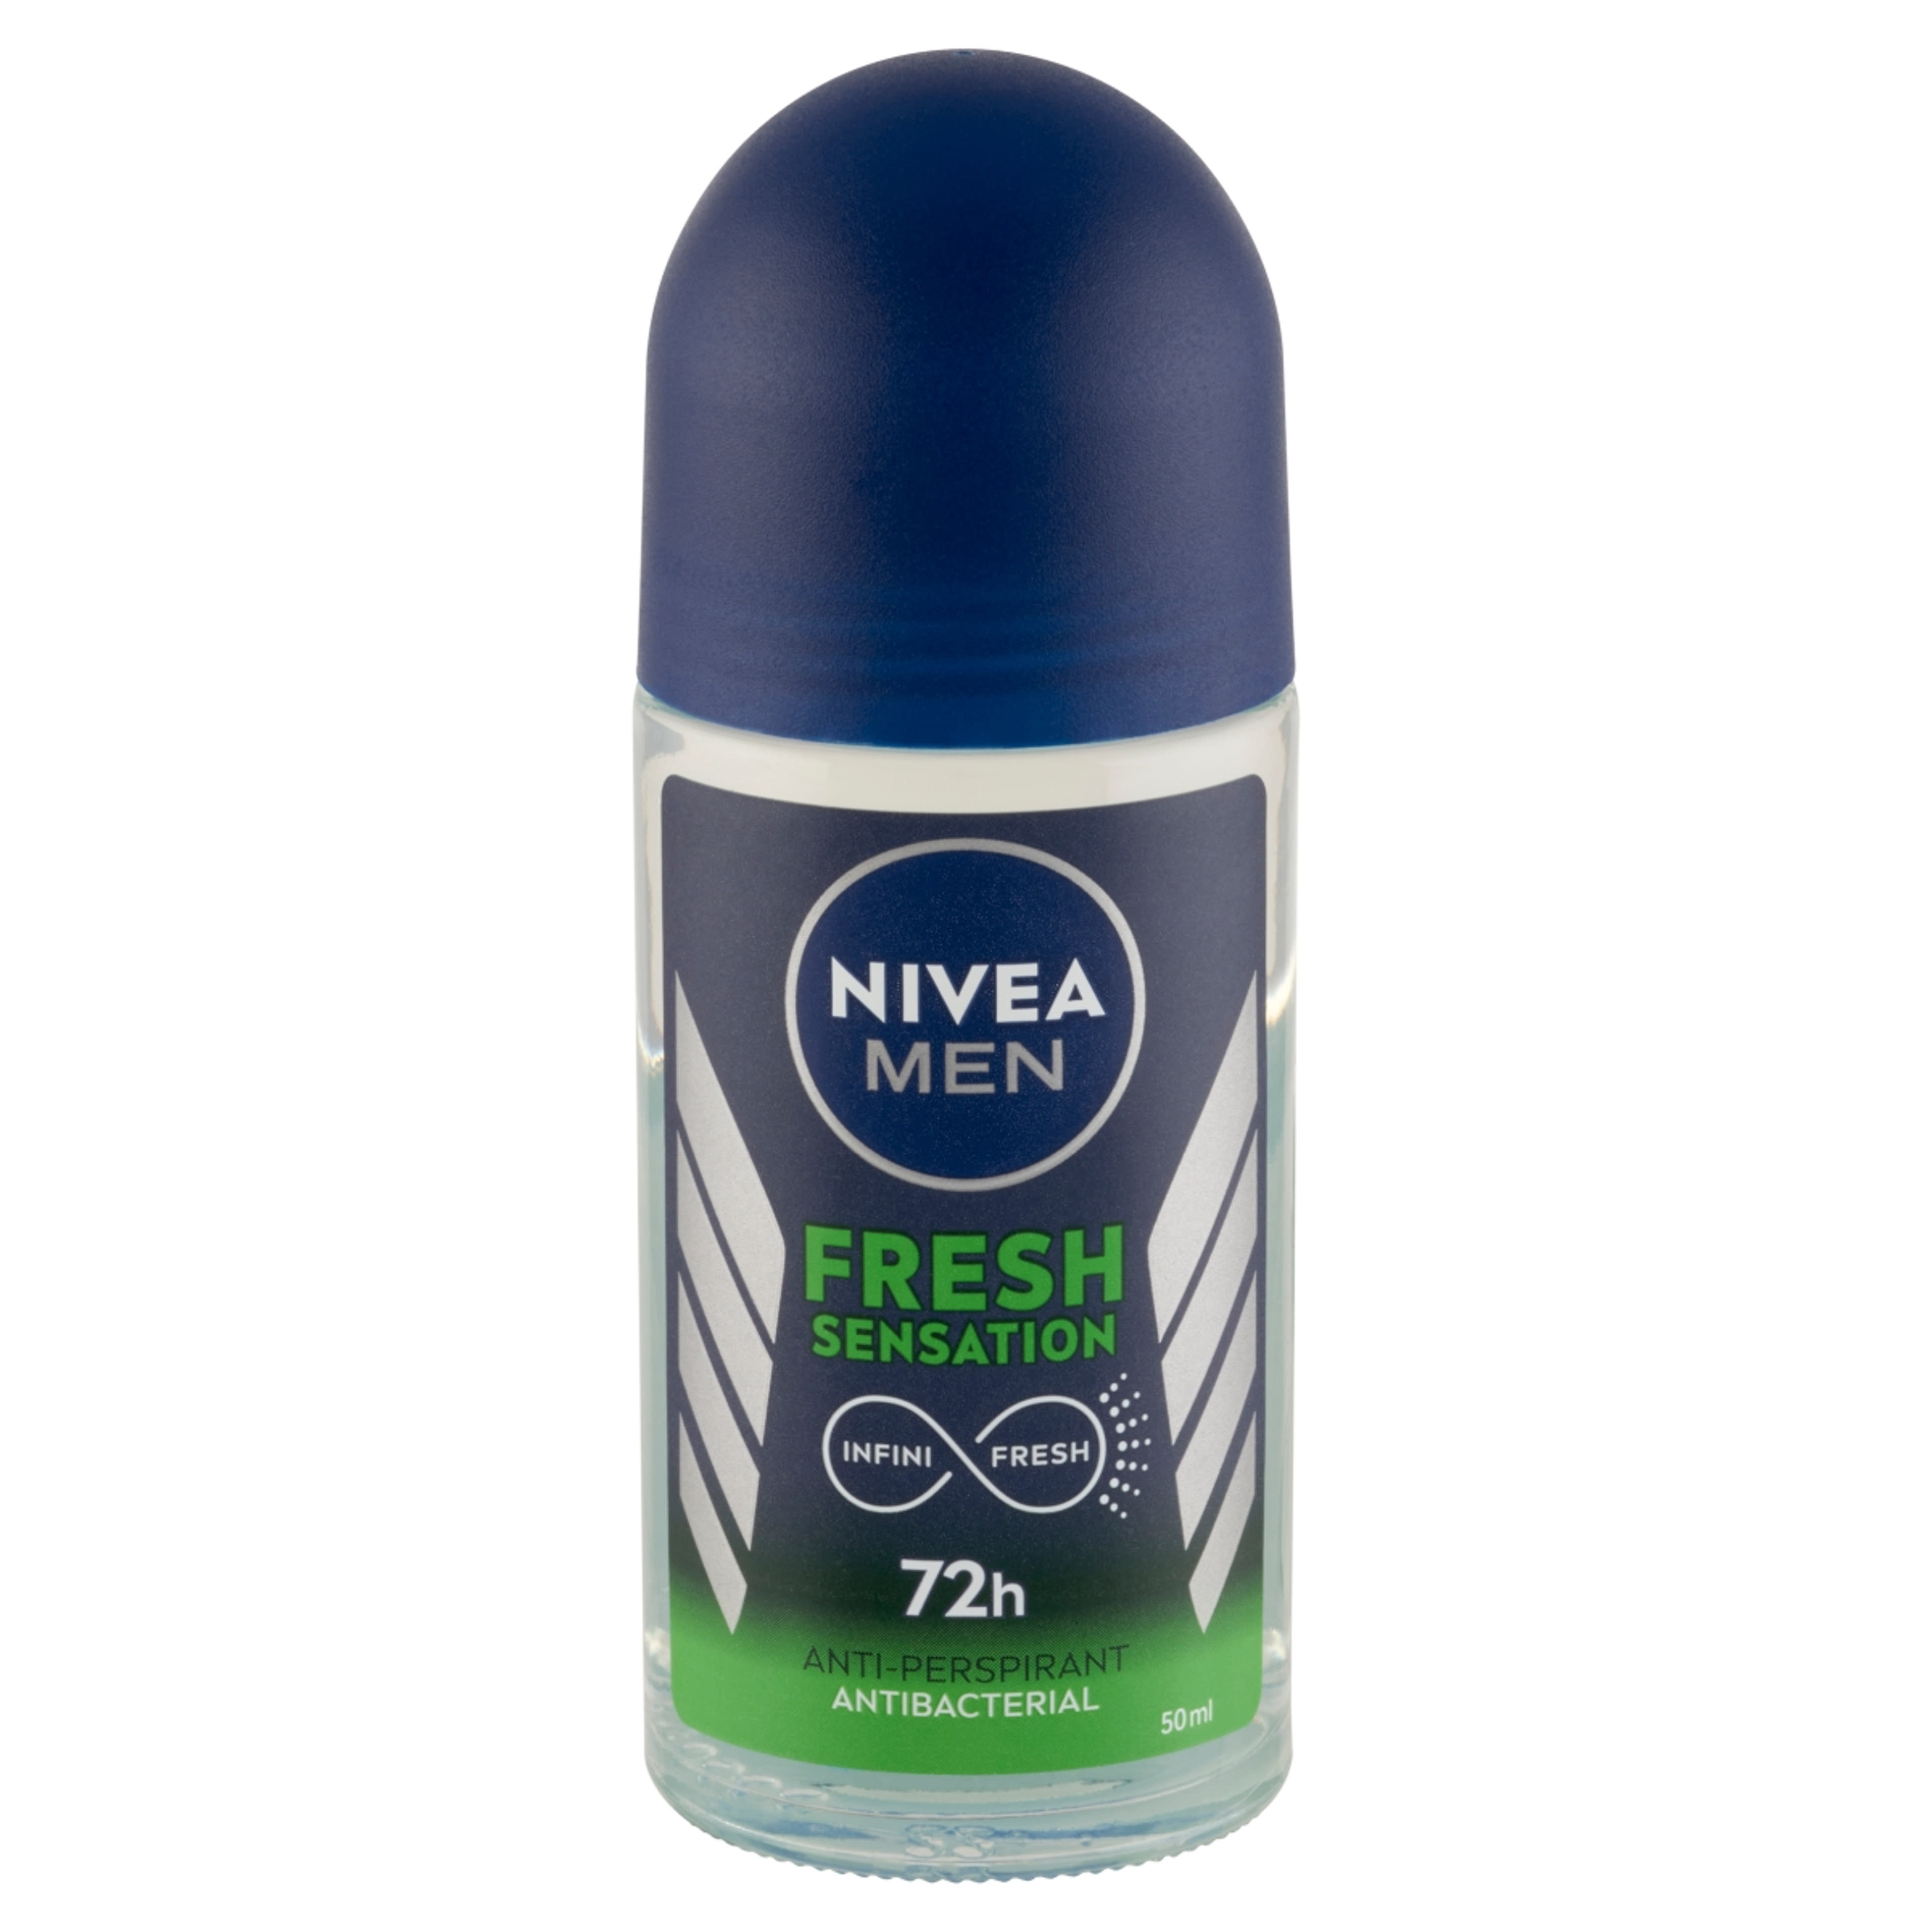 Nivea Men Fresh Sensation golyós dezodor - 50 ml-2